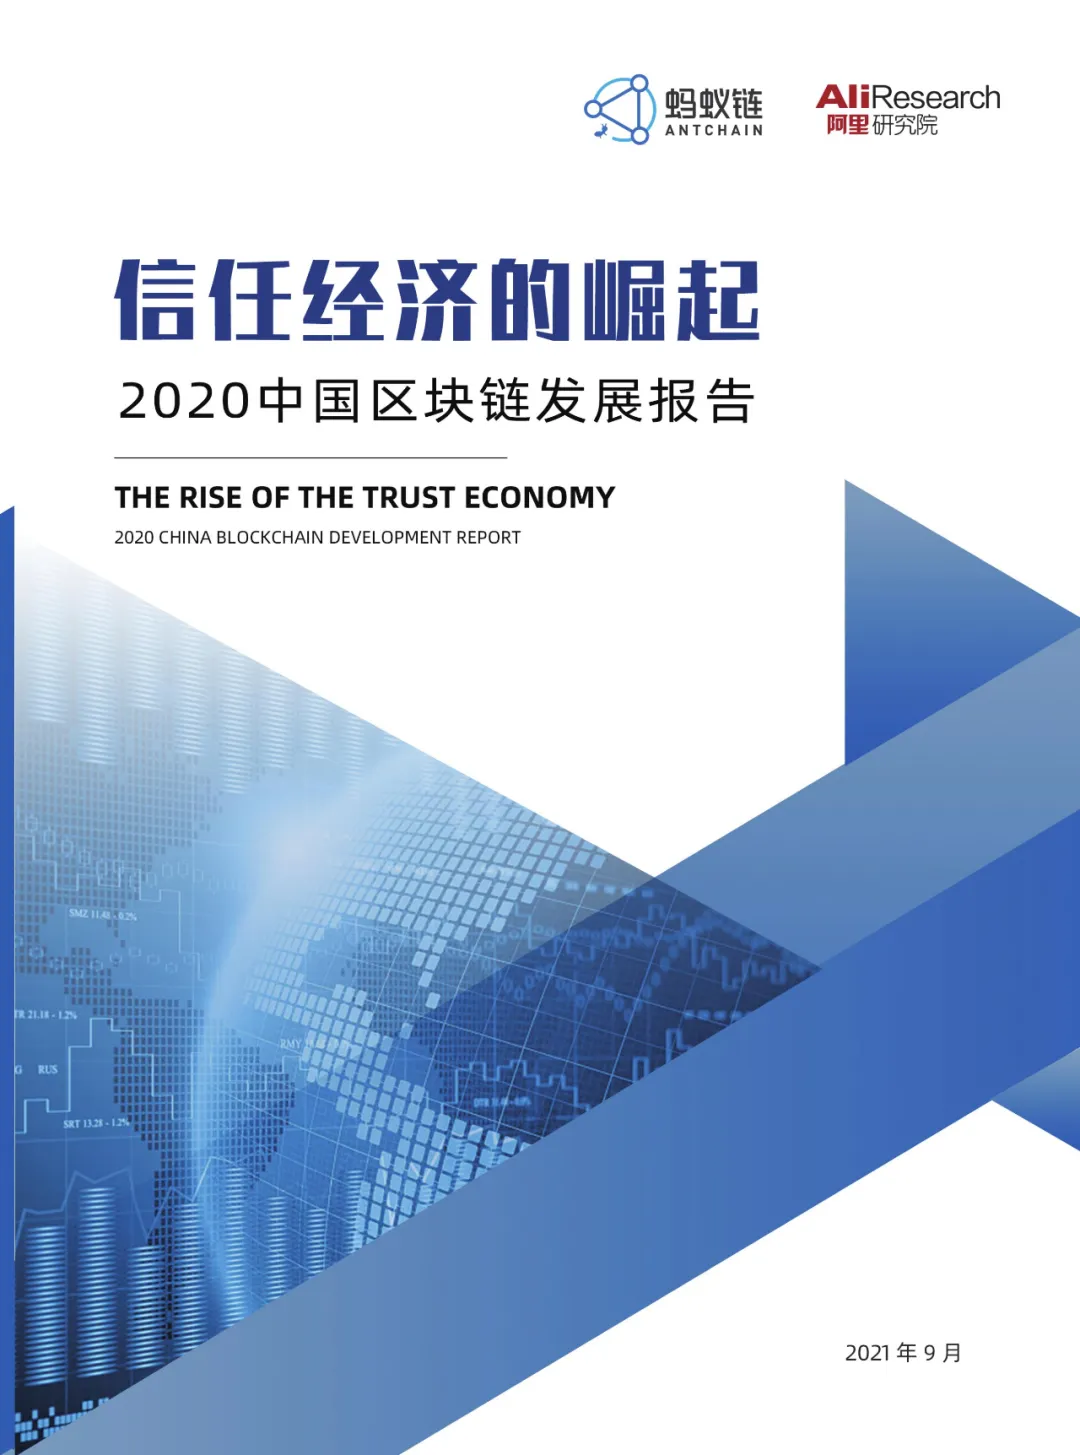 信任经济的崛起——2020中国区块链发展报告_数字世界_02